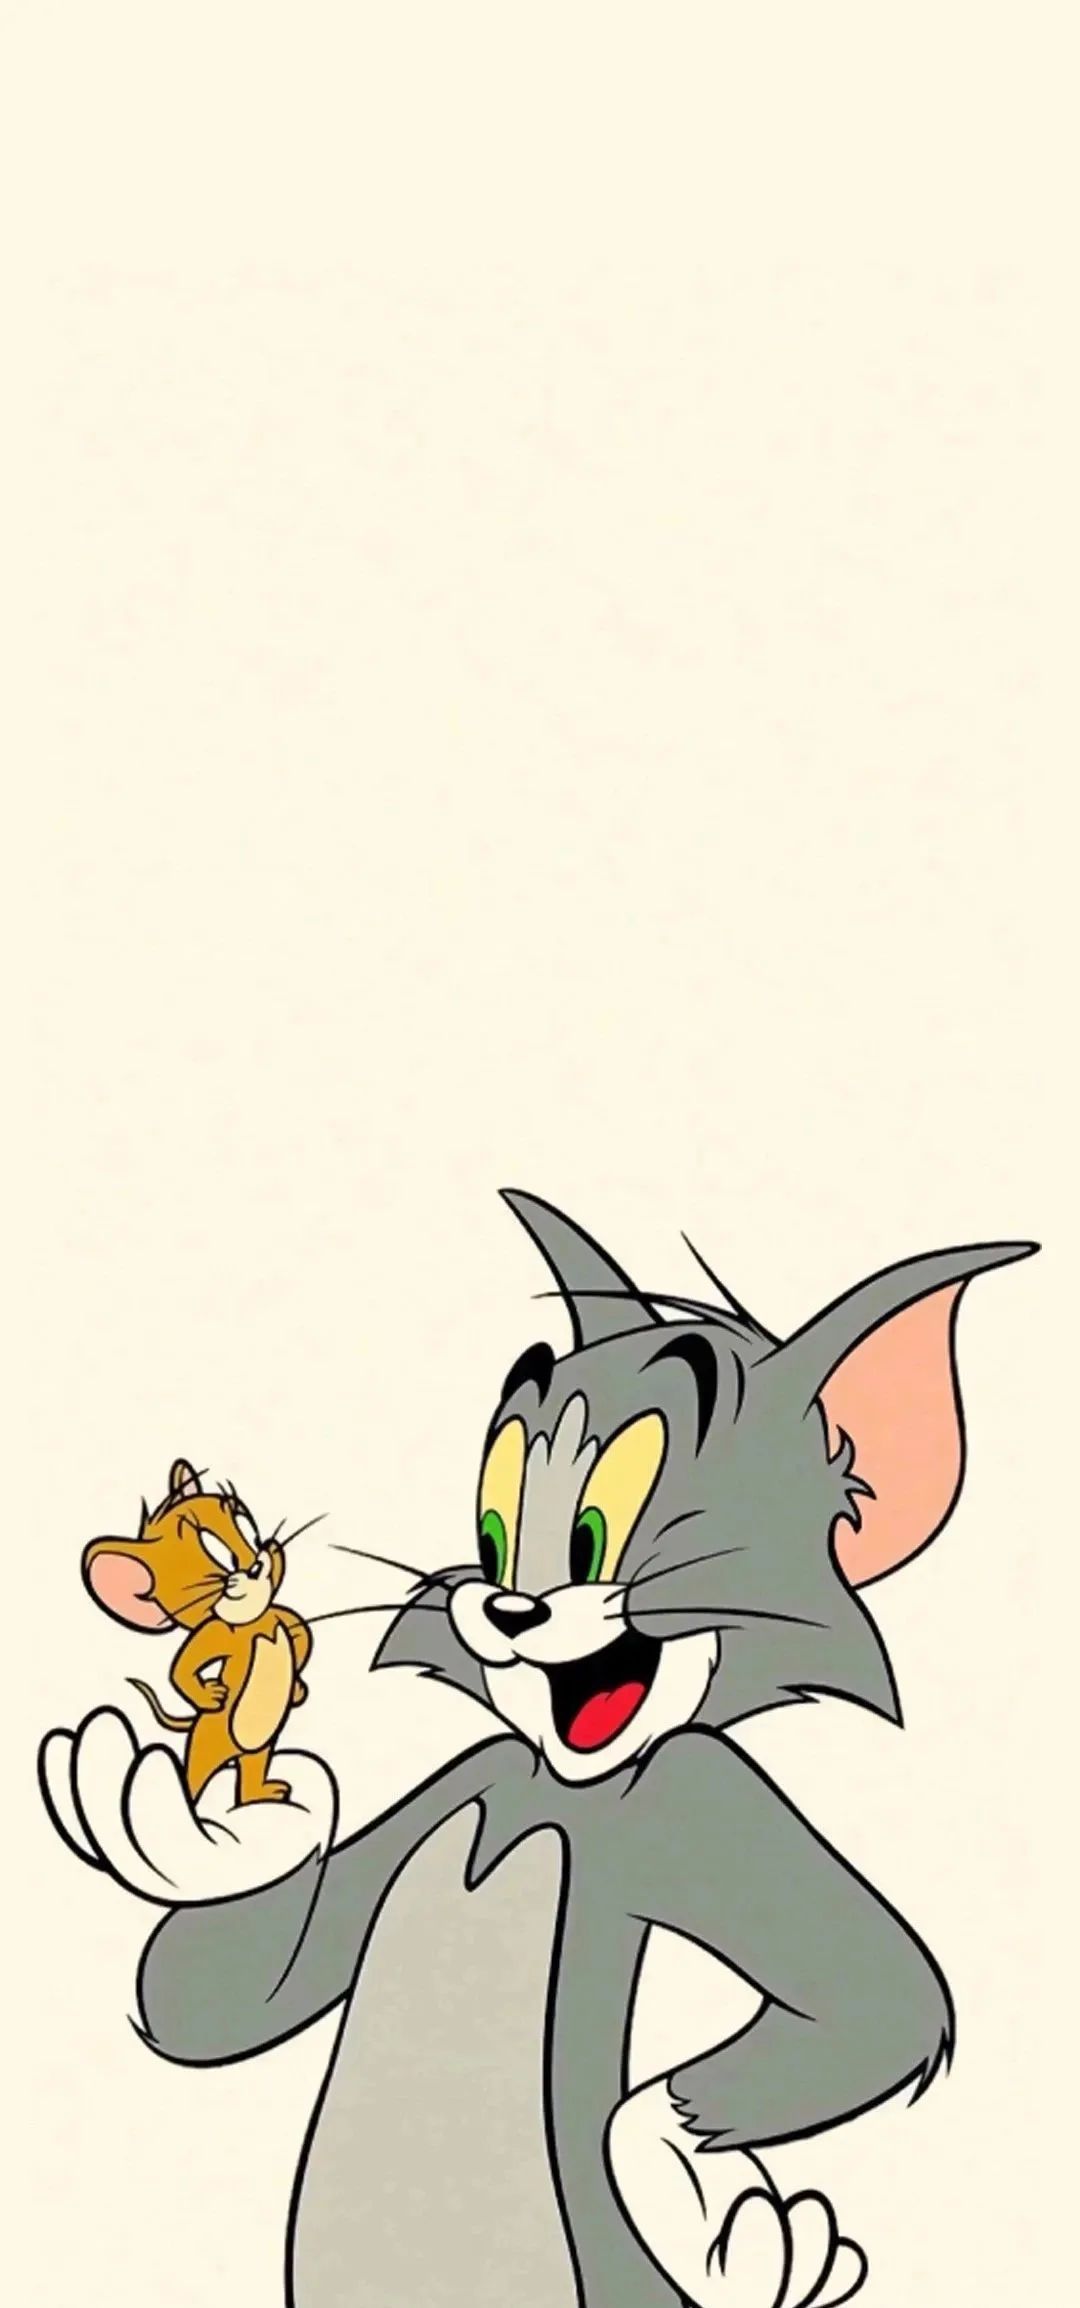 动漫壁纸:你们要的《猫和老鼠》到啦